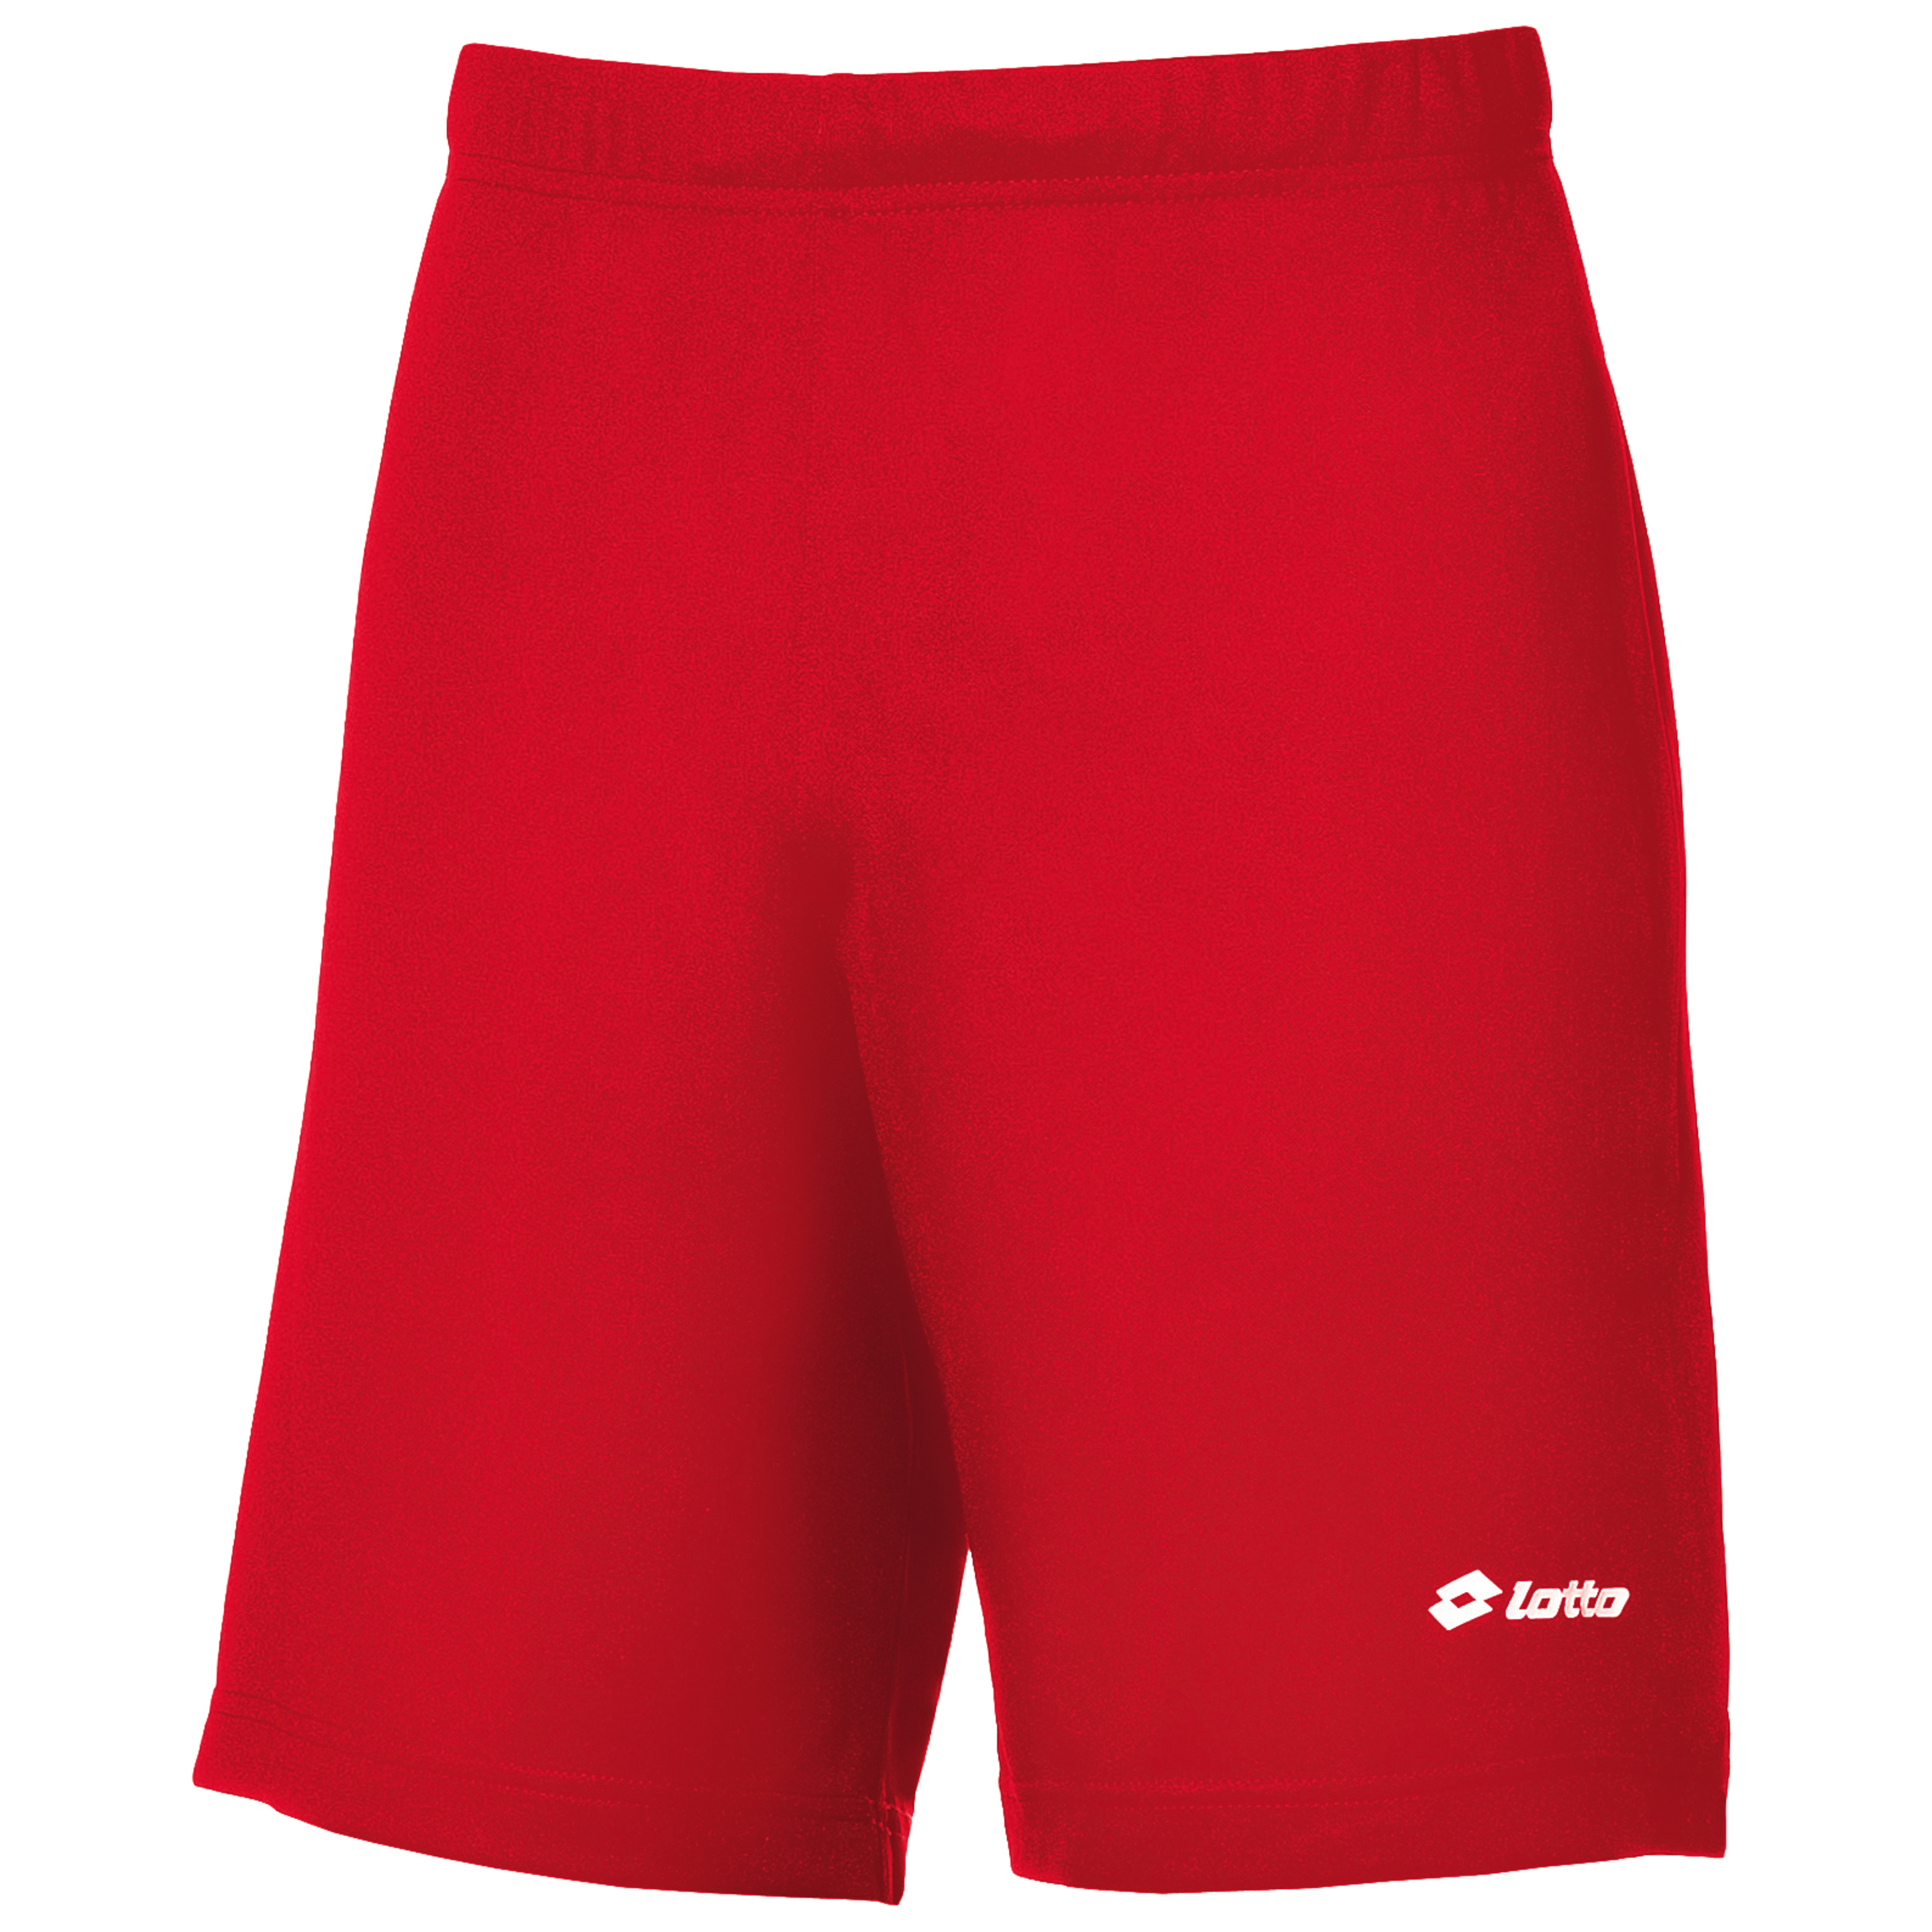 Lotto - Pantalones Cortos De Deporte Modelo Omega - Rojo  MKP